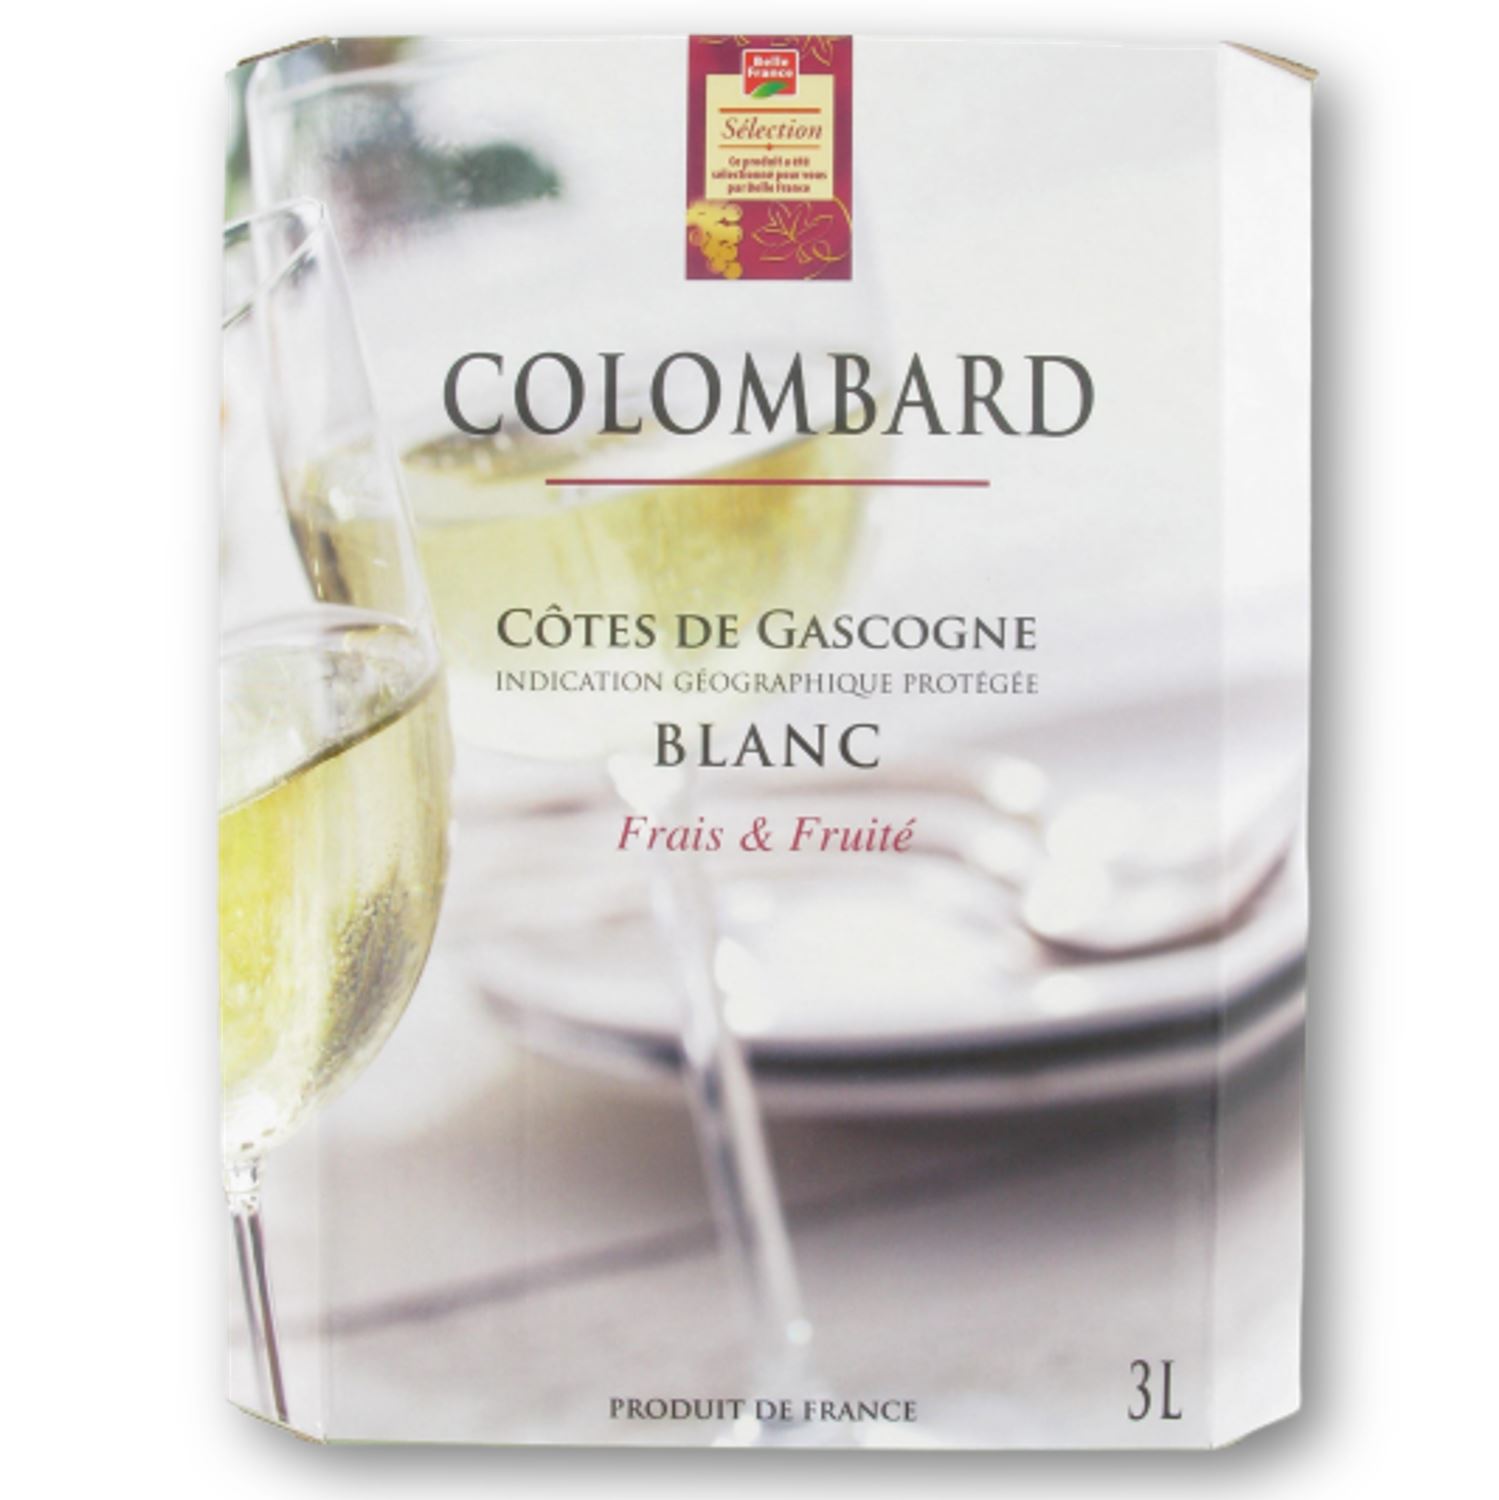 Côtes de Gascogne blanc Colombard IGP